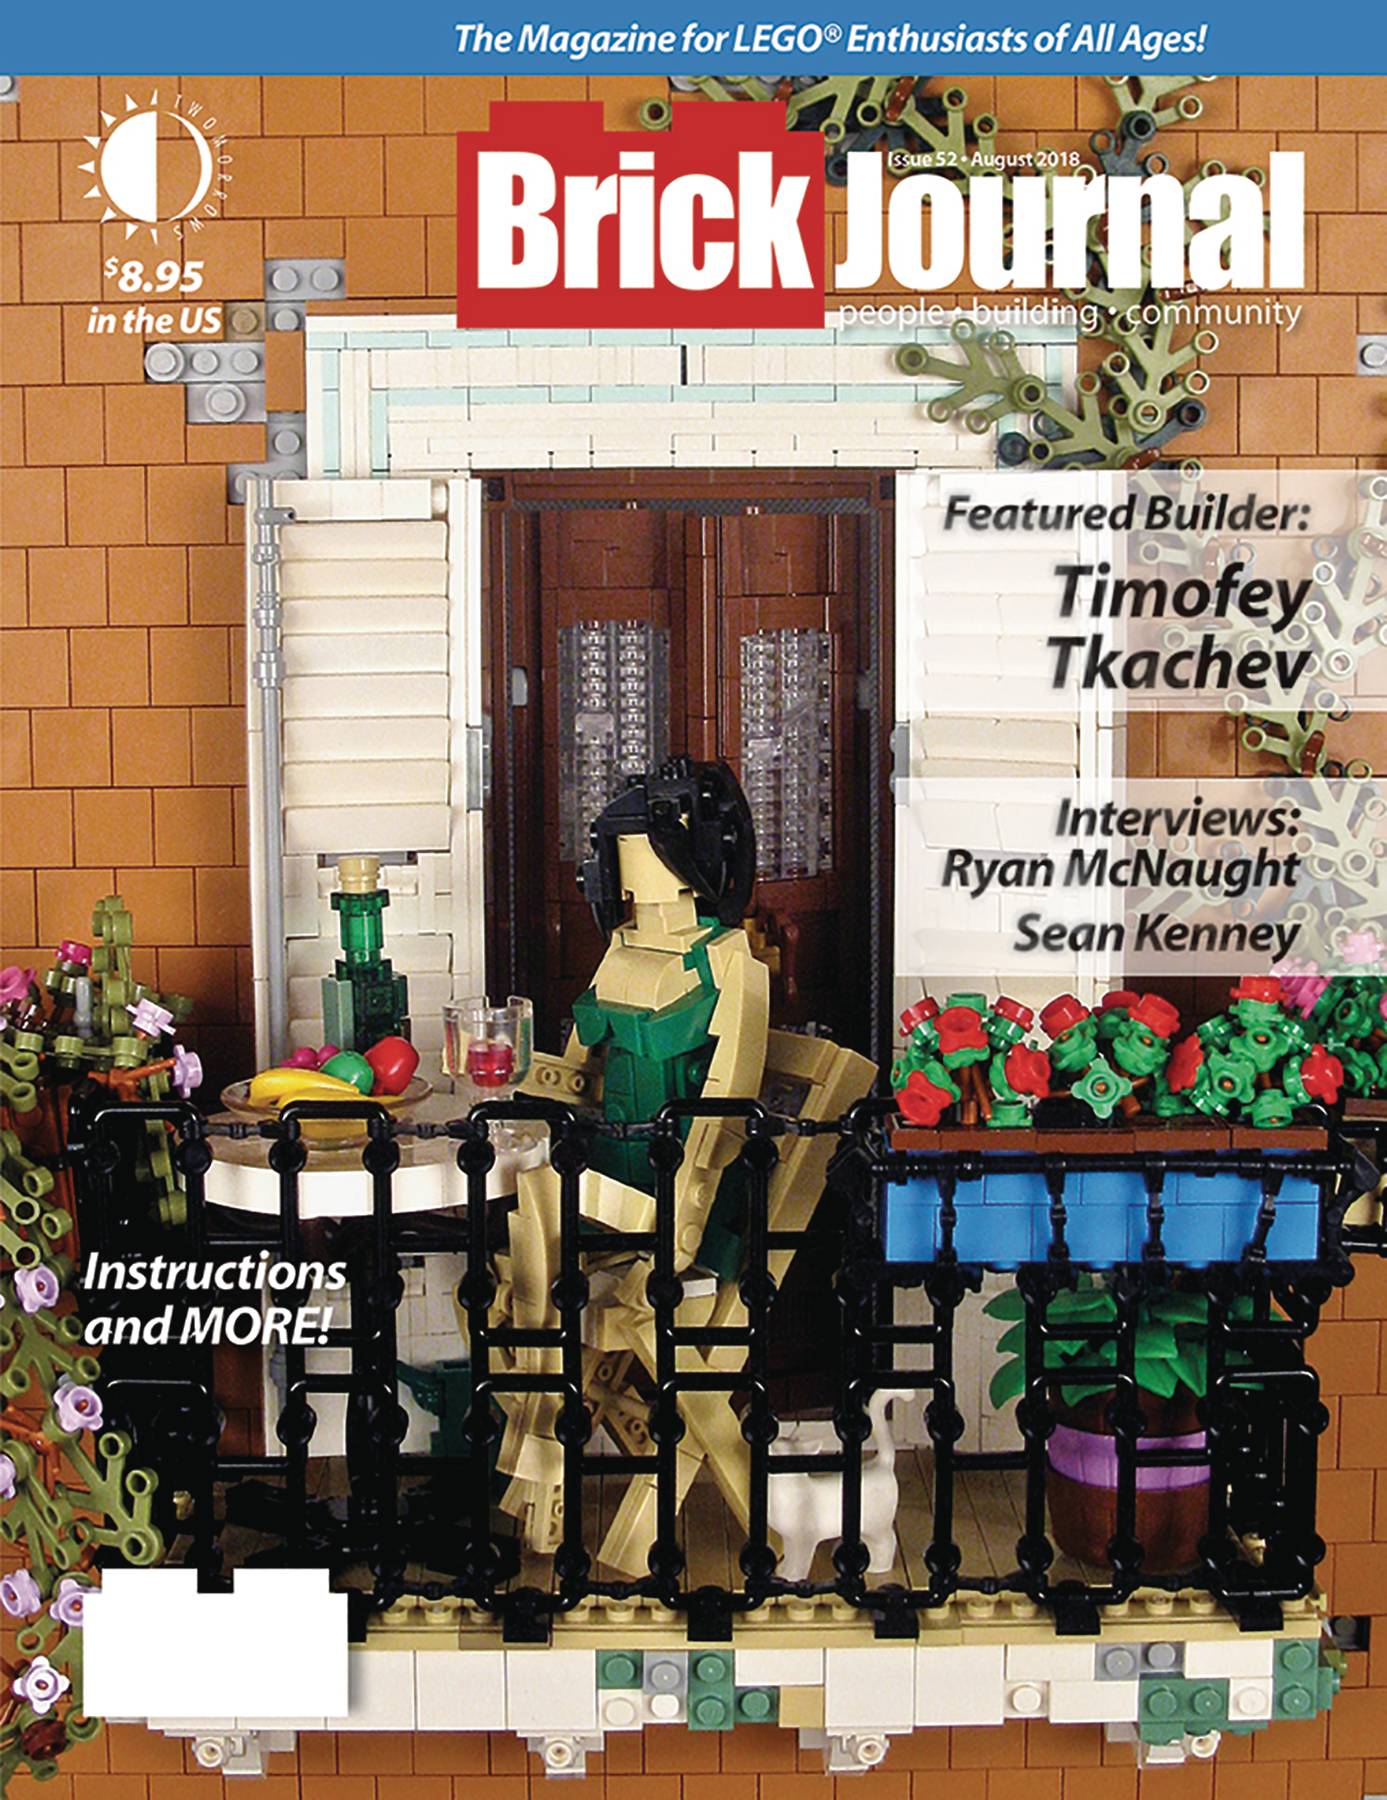 Brickjournal #52